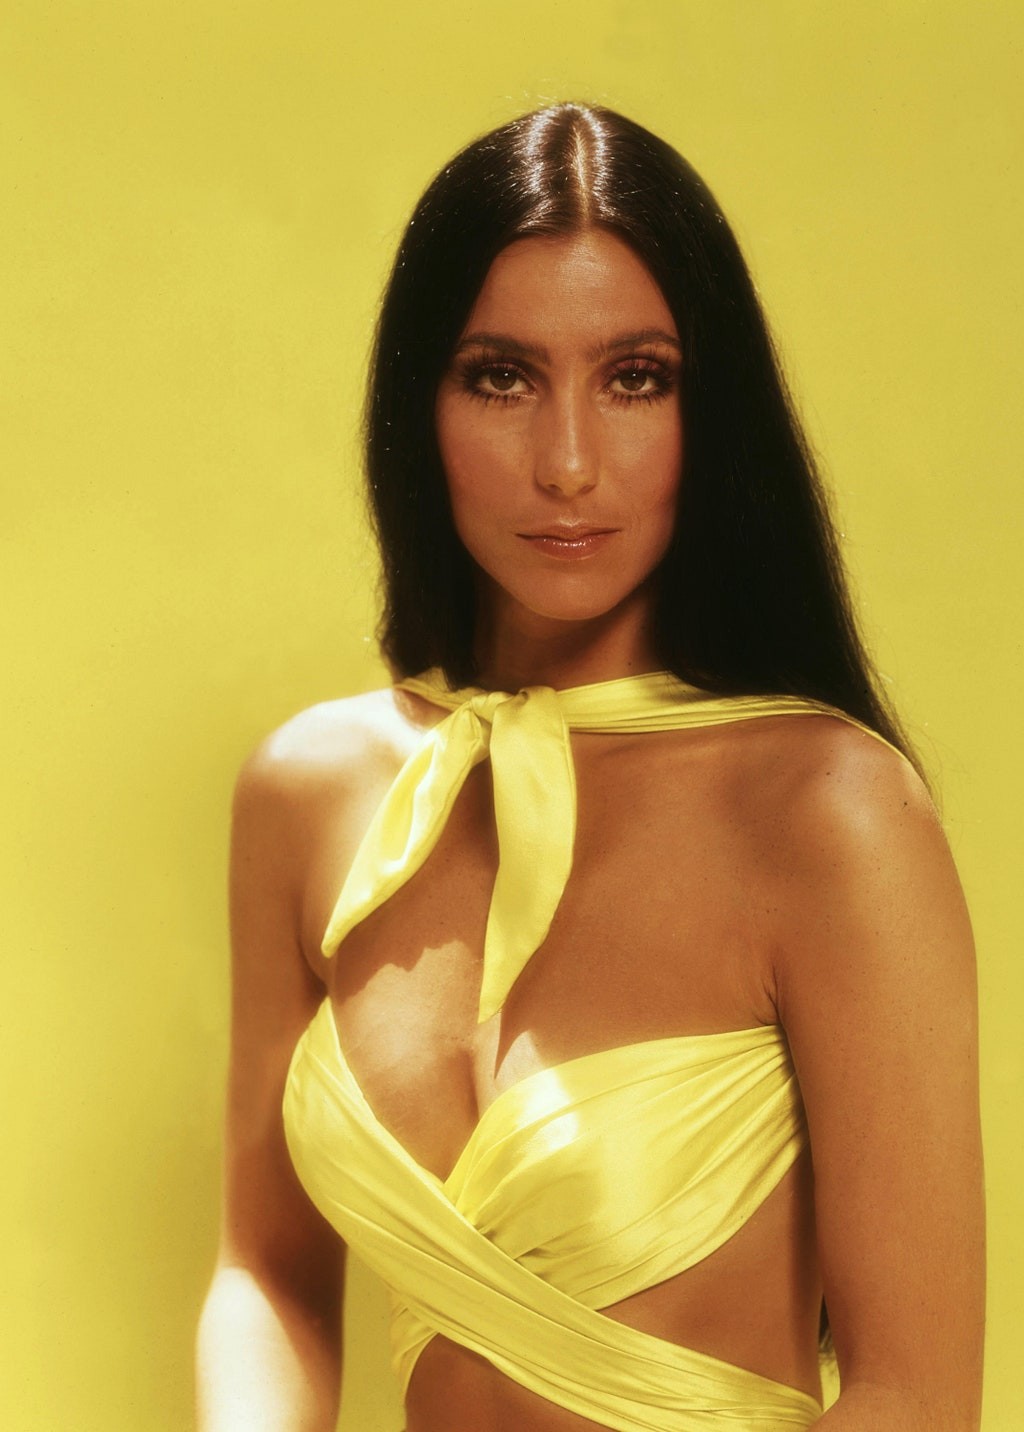 Vestido amarelo de Zendaya no Oscar é aceno divertido para Cher (Foto: Reprodução e Getty Images)